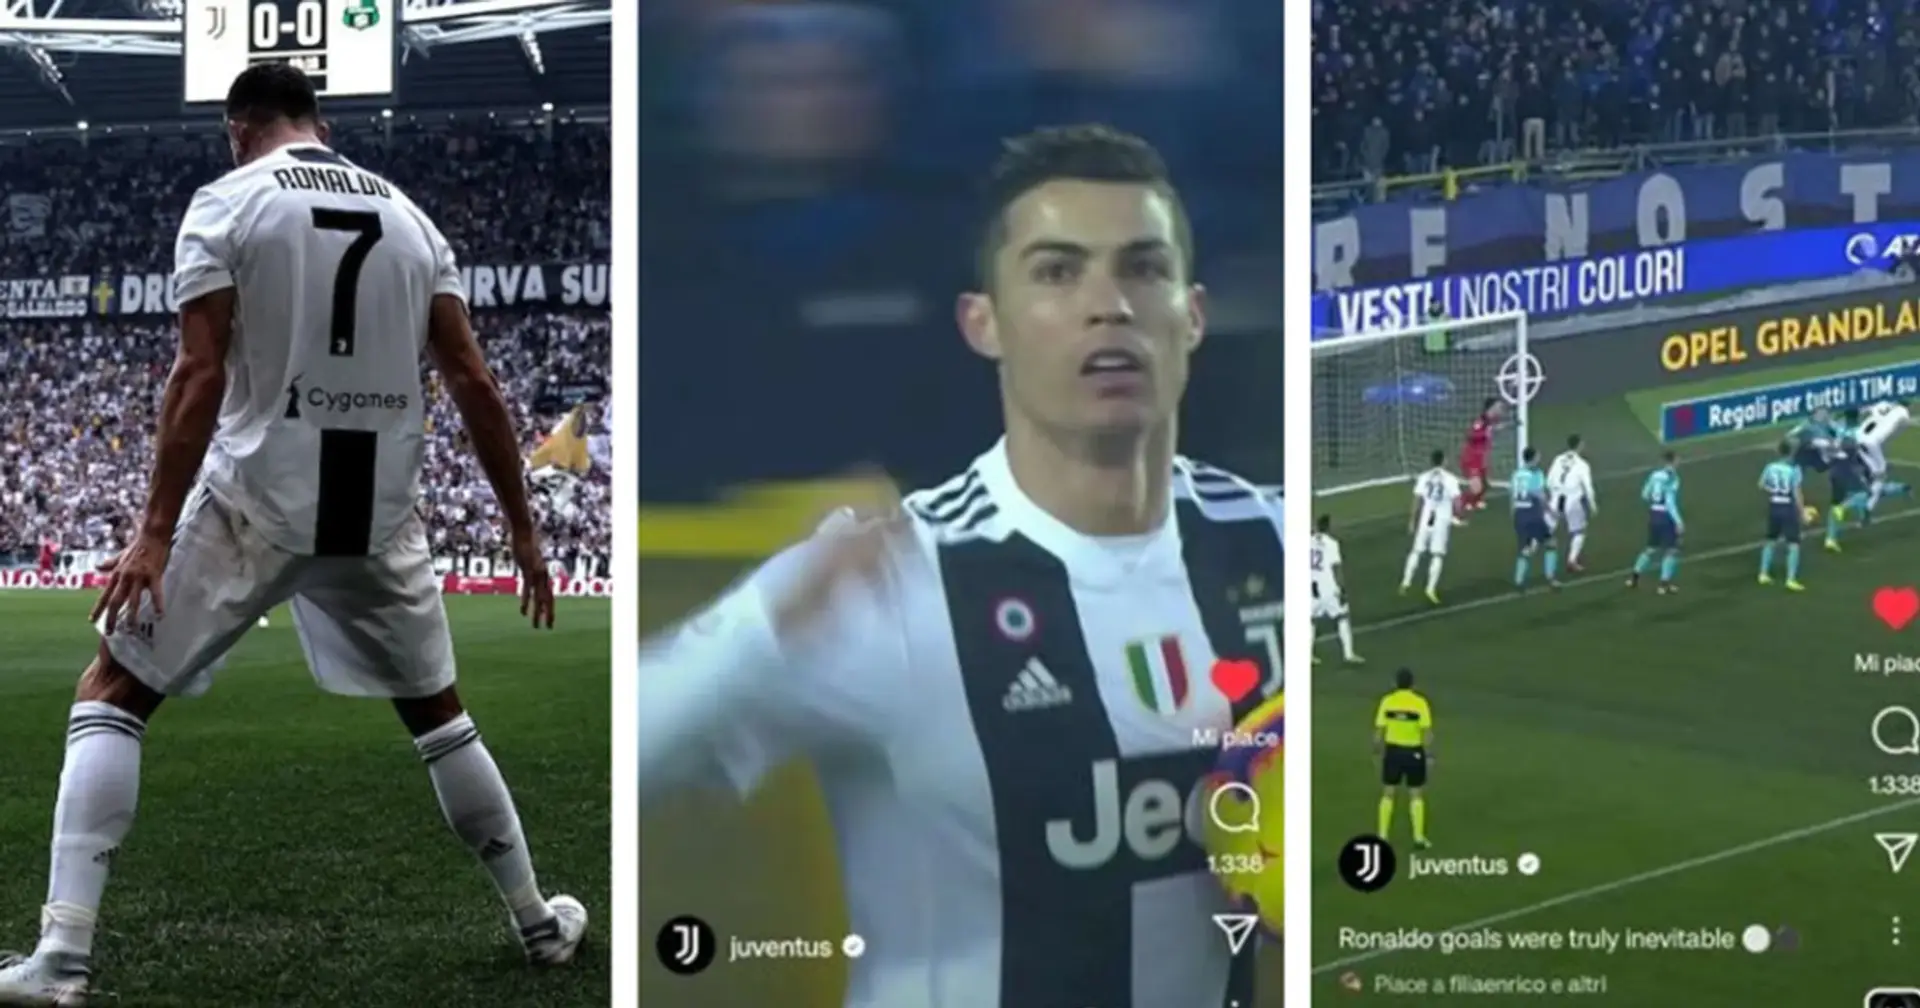 Juve hat ein Tor von Ronaldo gegen Atalanta auf Twitter gepostet. Fans fordern Verein auf, Cristiano zurückzuholen 